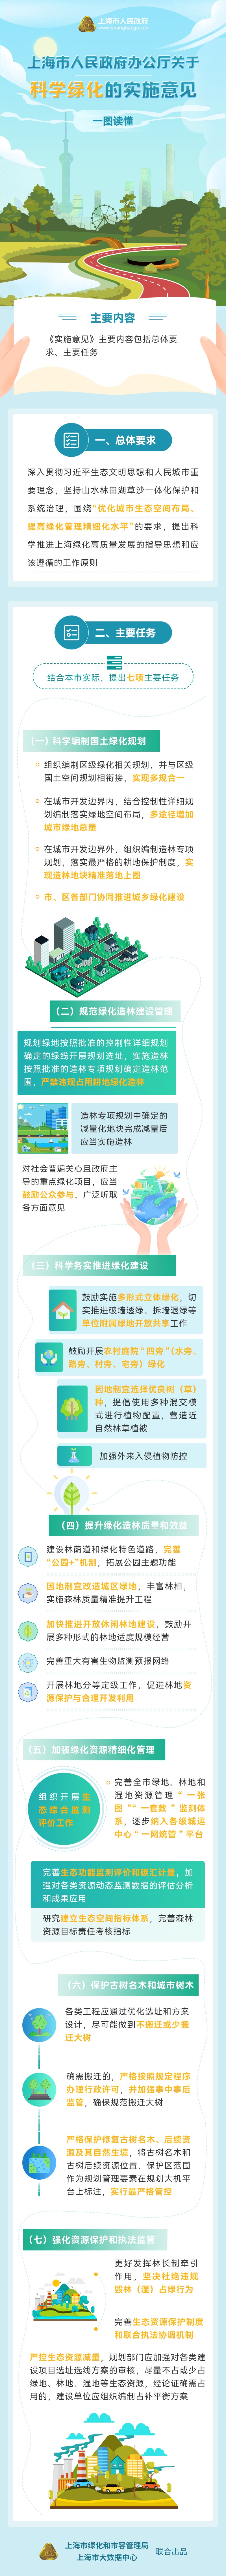 《上海市人民政府办公厅关于科学绿化的实施意见》一图读懂.jpeg